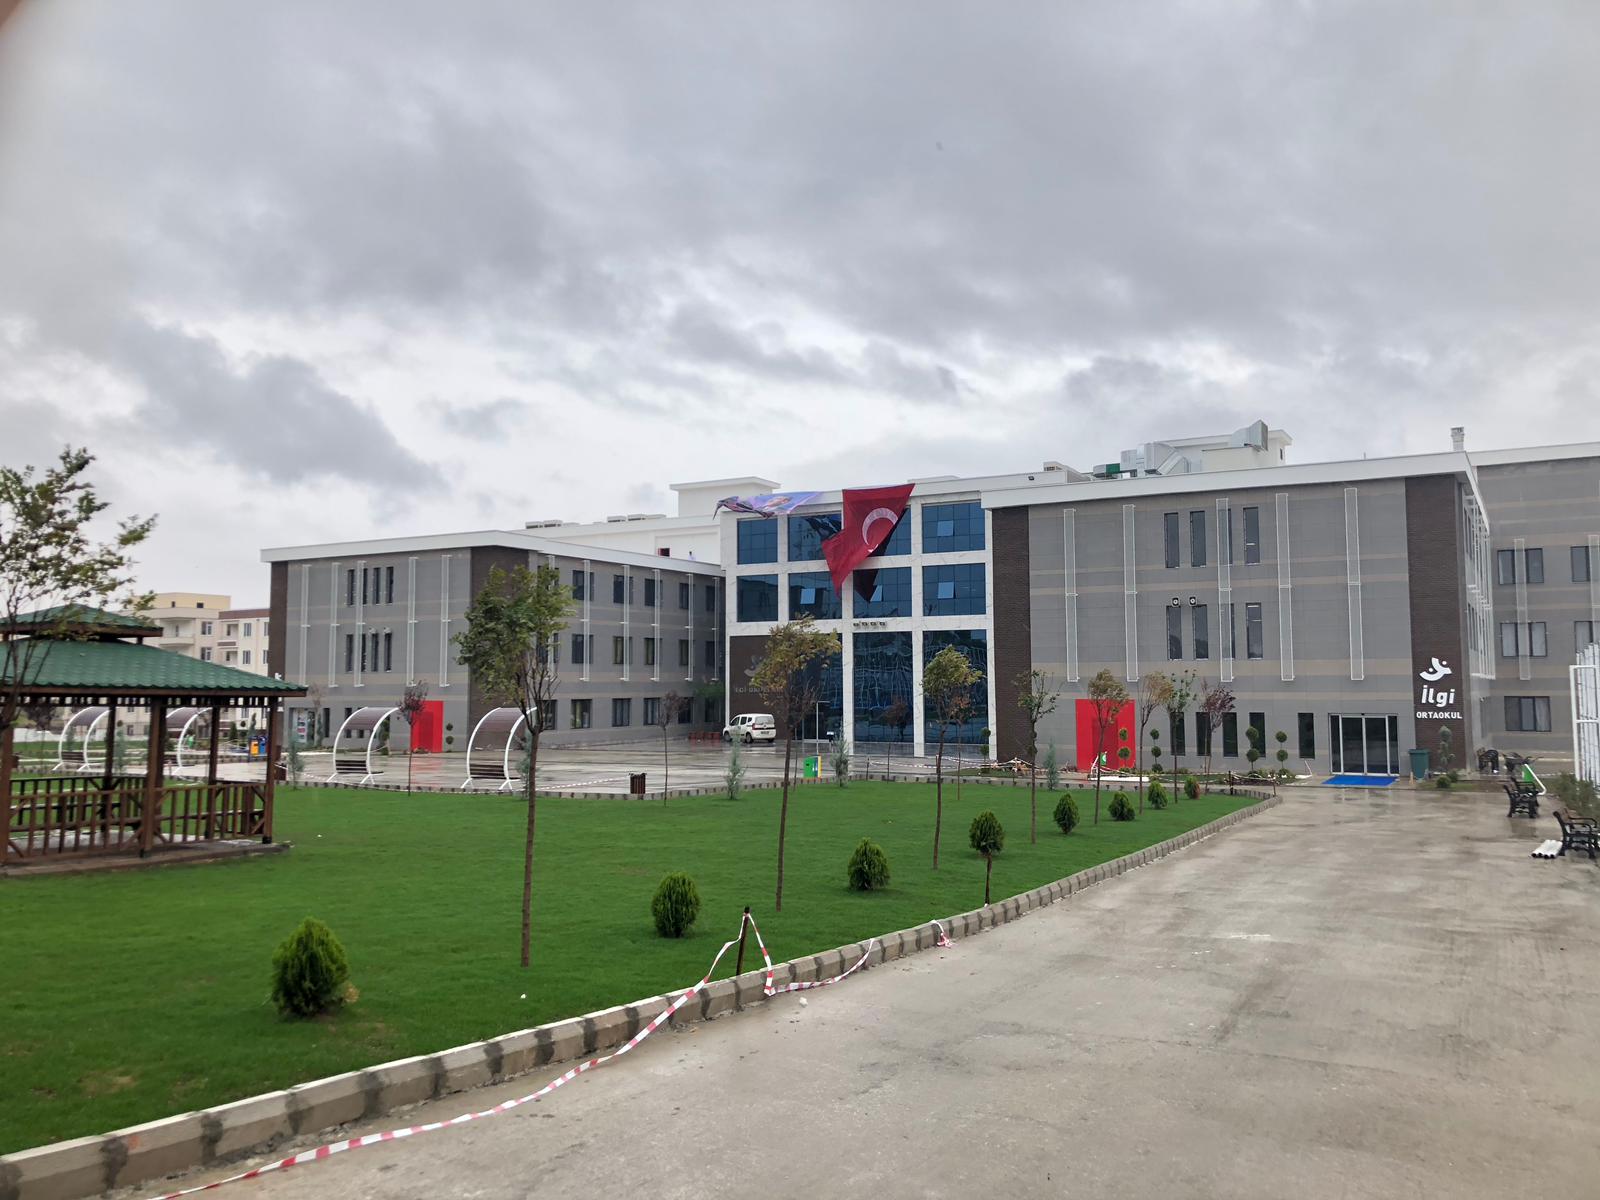 İlgi Okulları Çekmeköy Ortaokulu